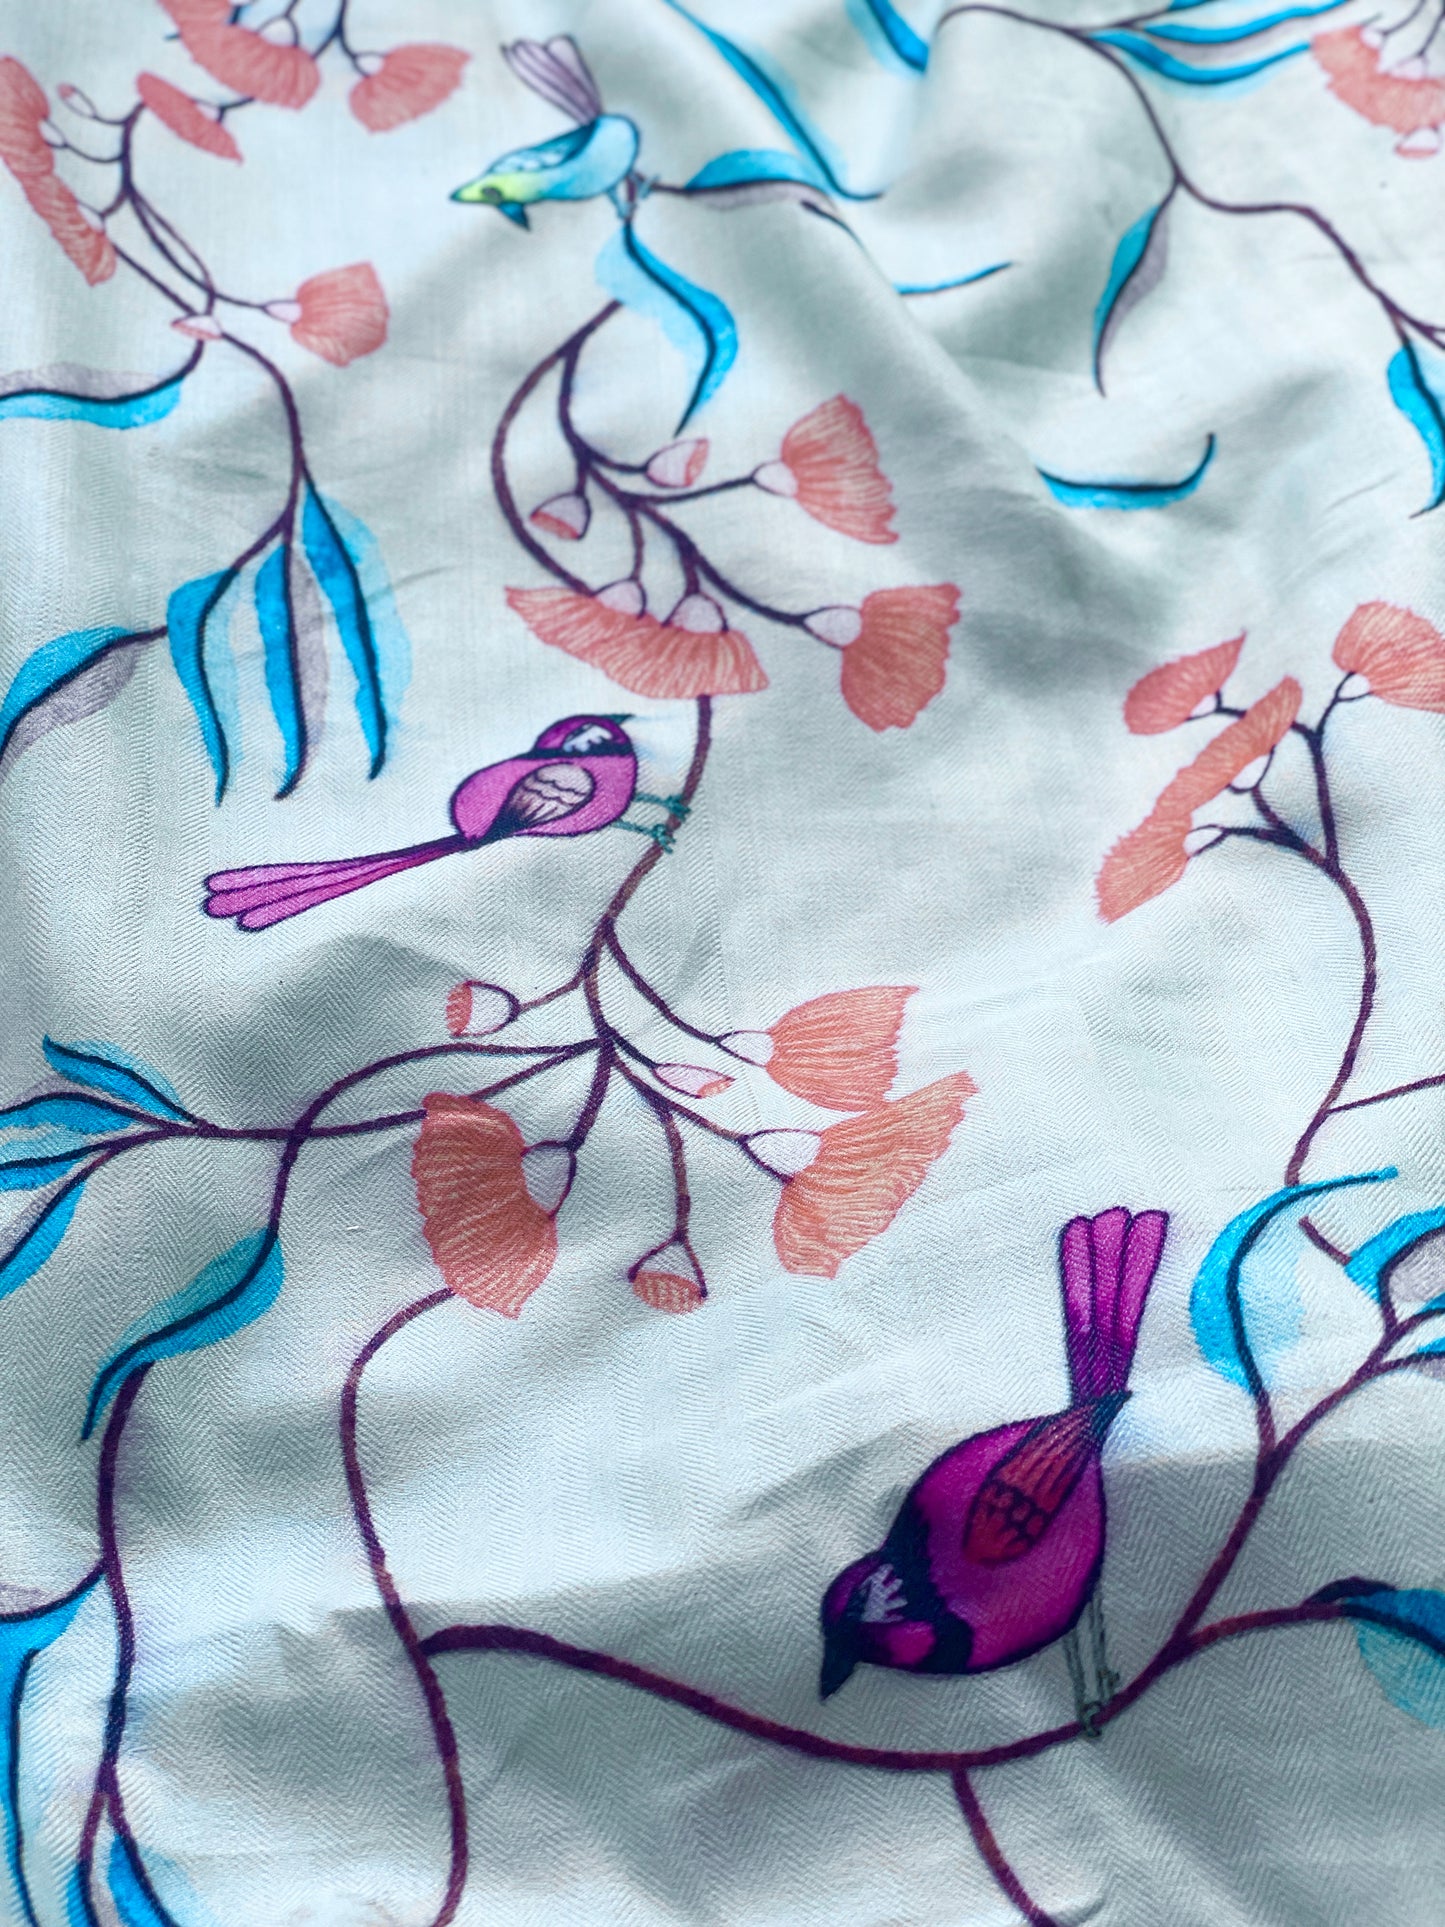 Staple Silk Bird Printed Fabric